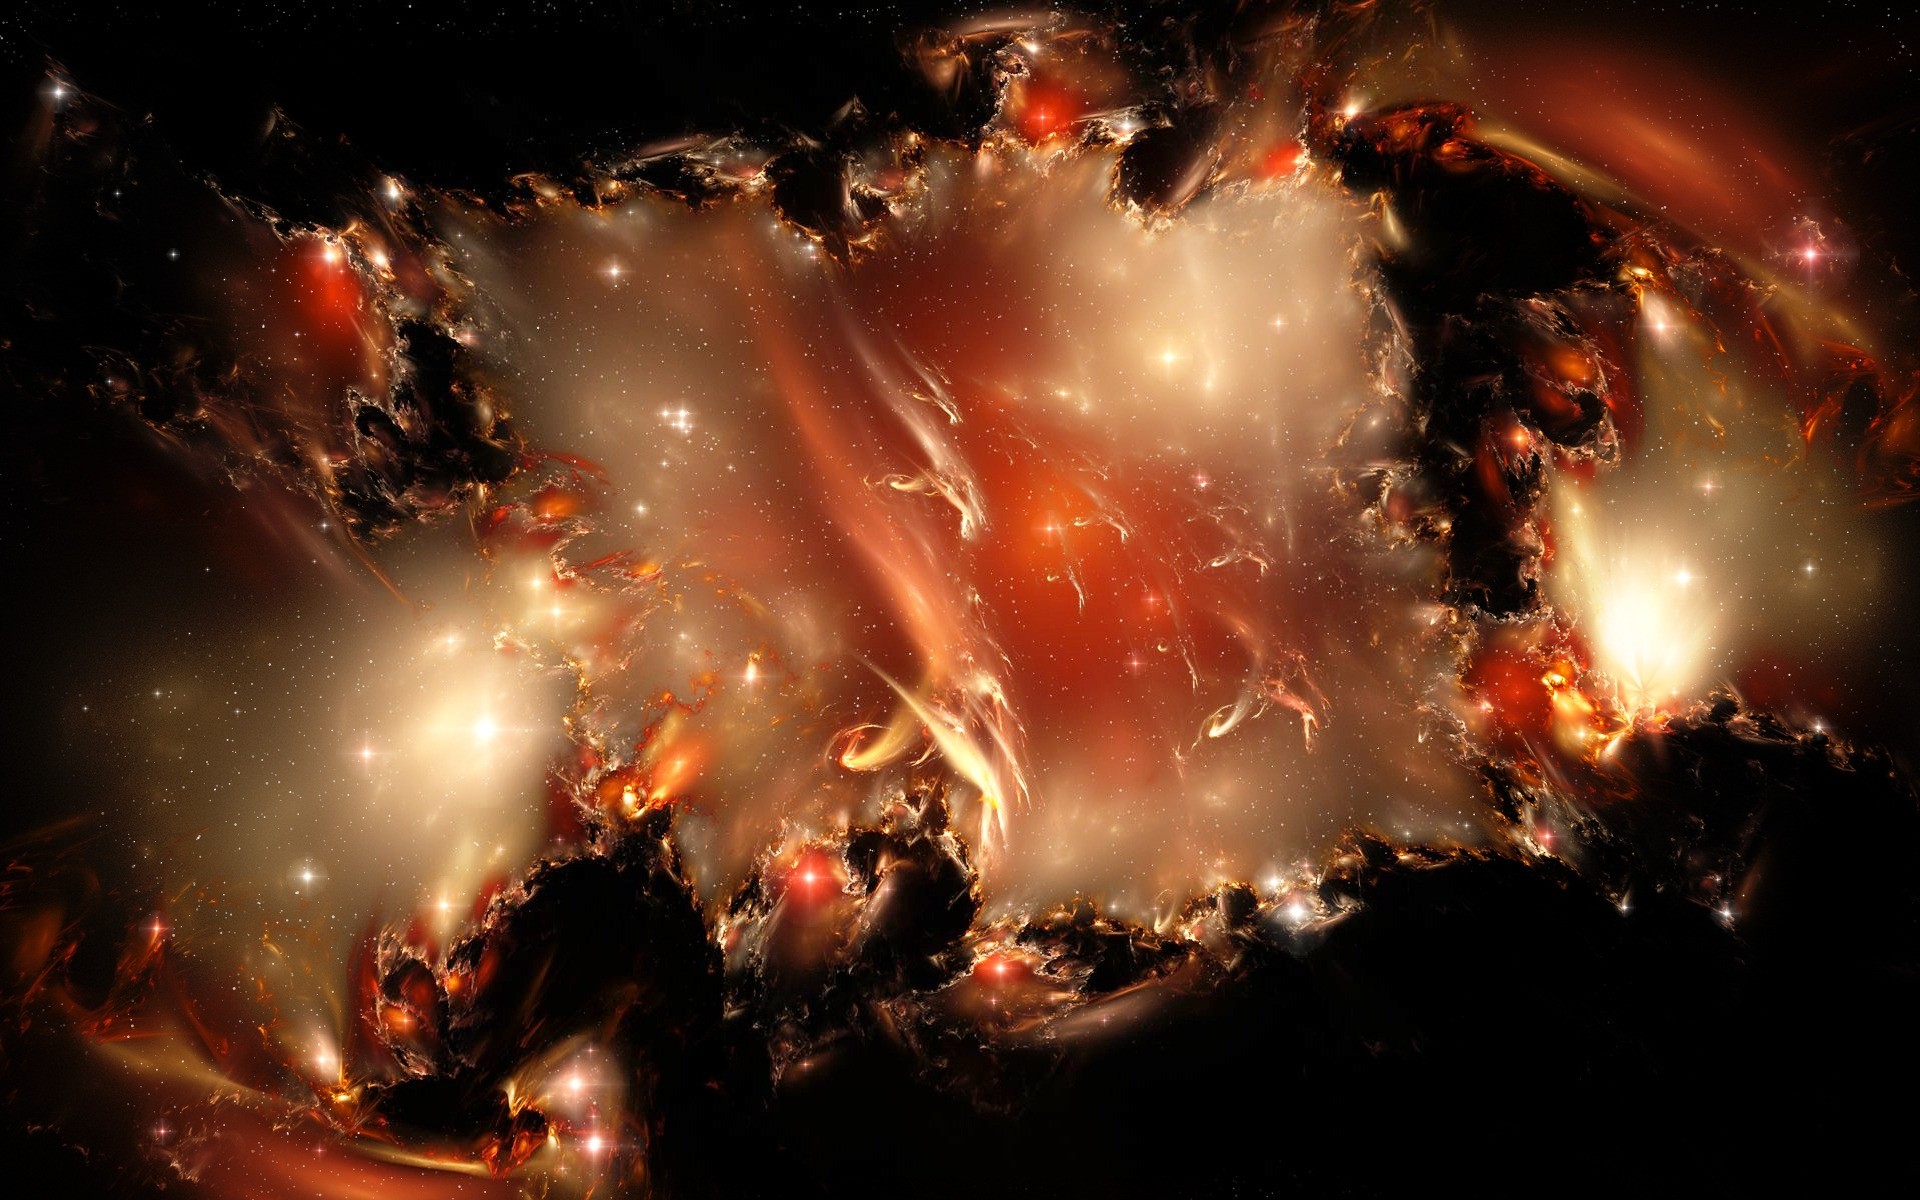 космос сюрреалистично астрономия фантазия бесконечность галактика шарообразные наука физика аннотация образы дым свет созвездие мечта космос сверхновая фрактал люминесценция пыль